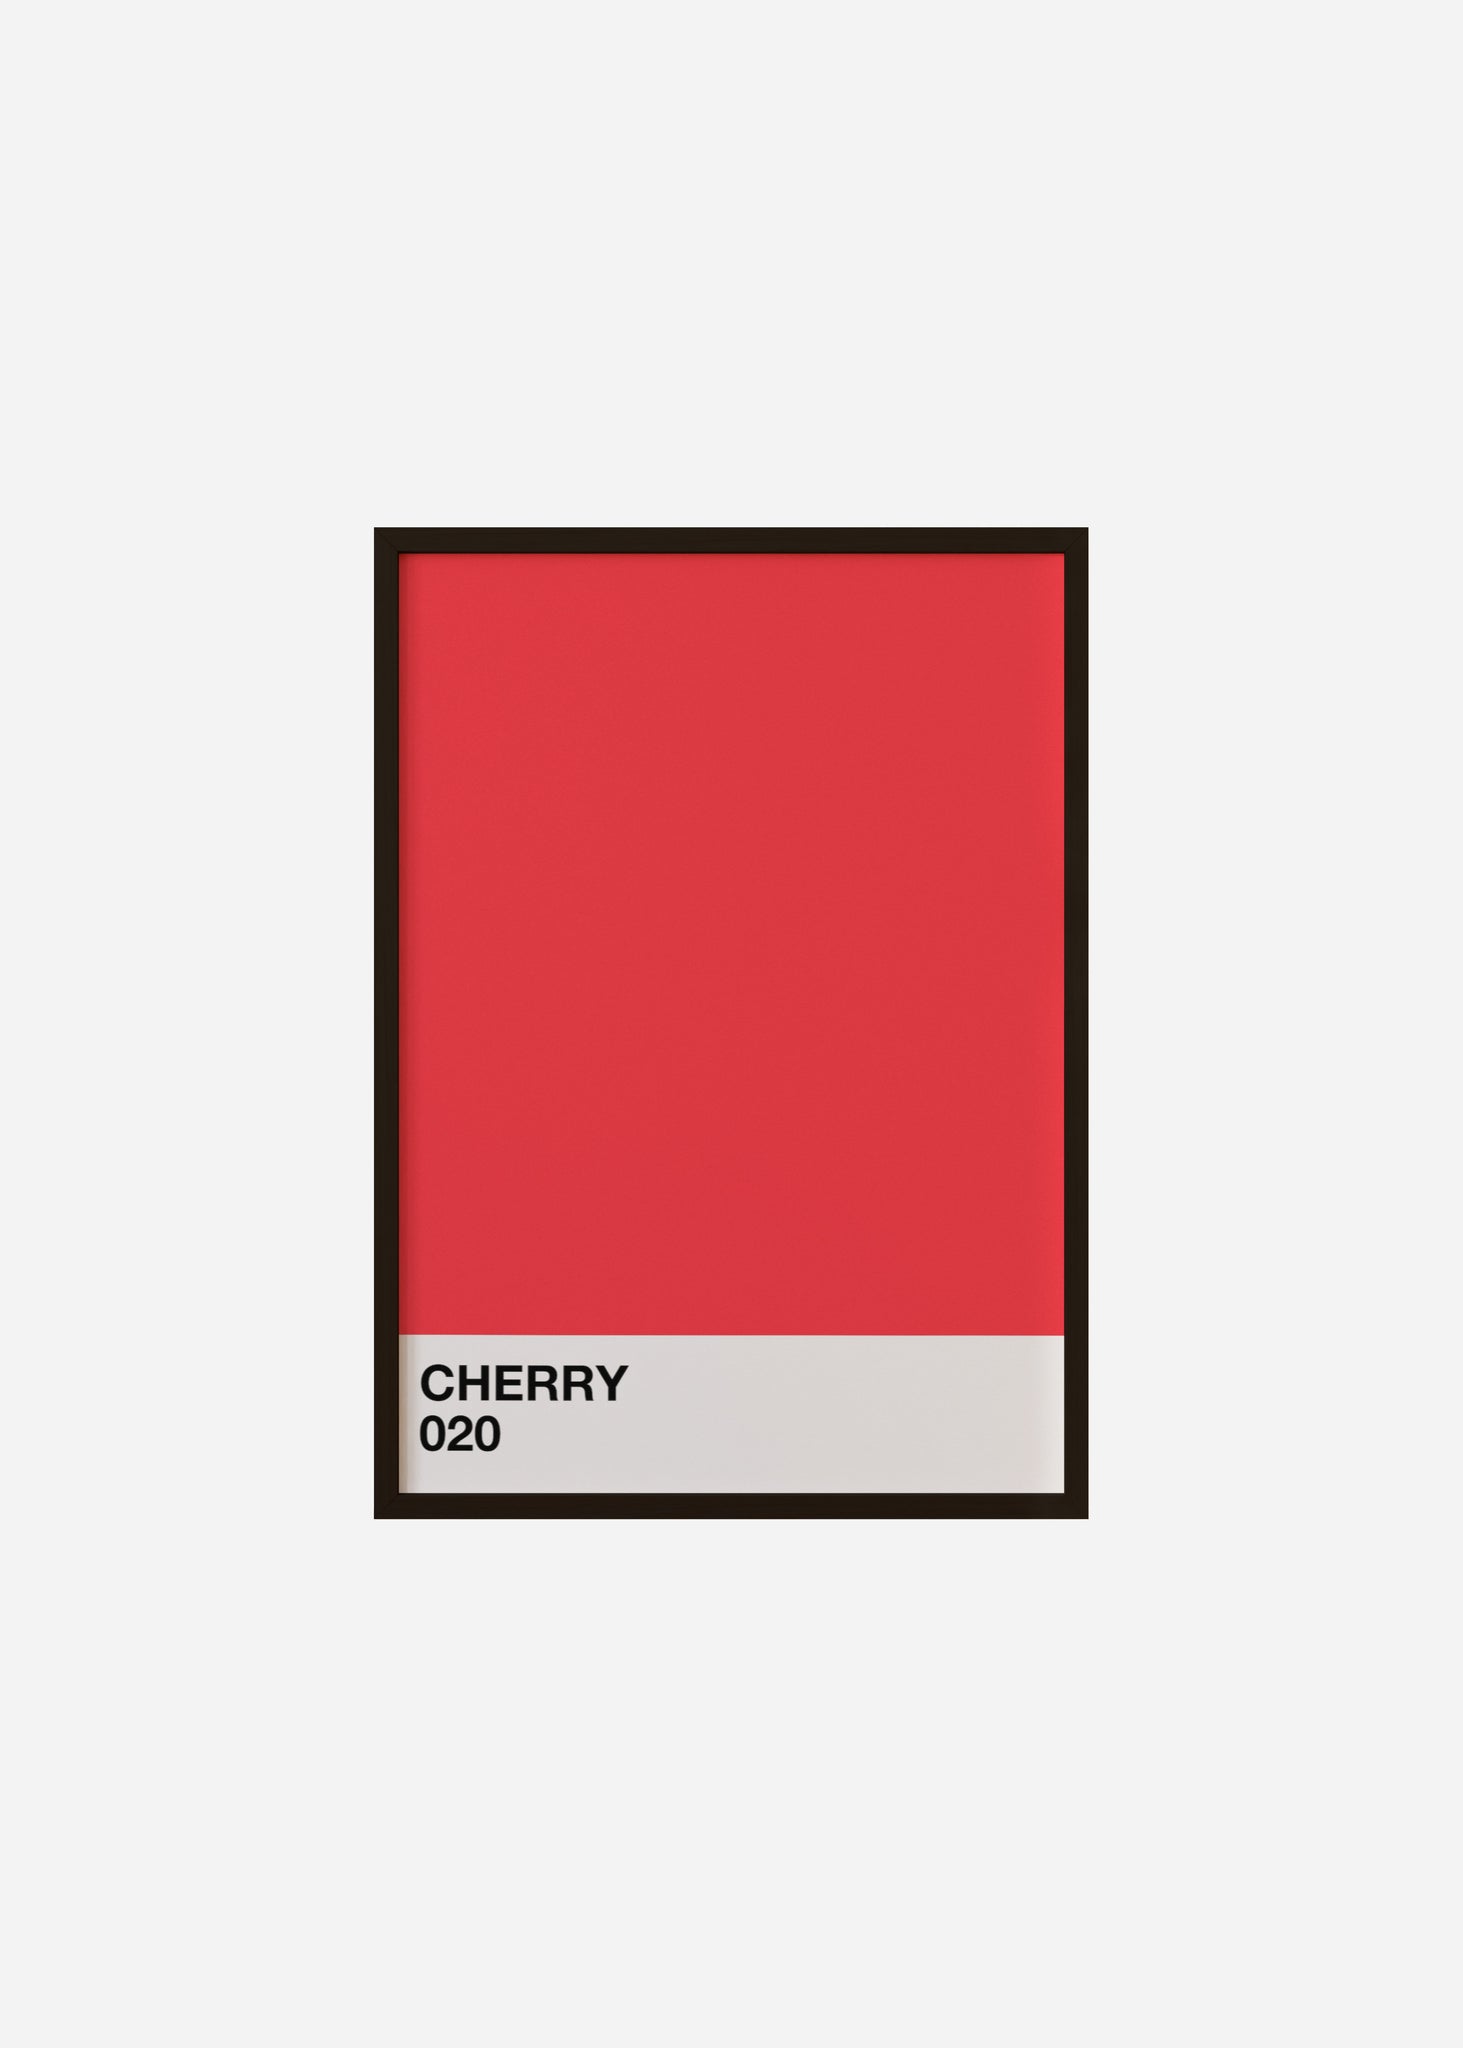 cherry Framed Print